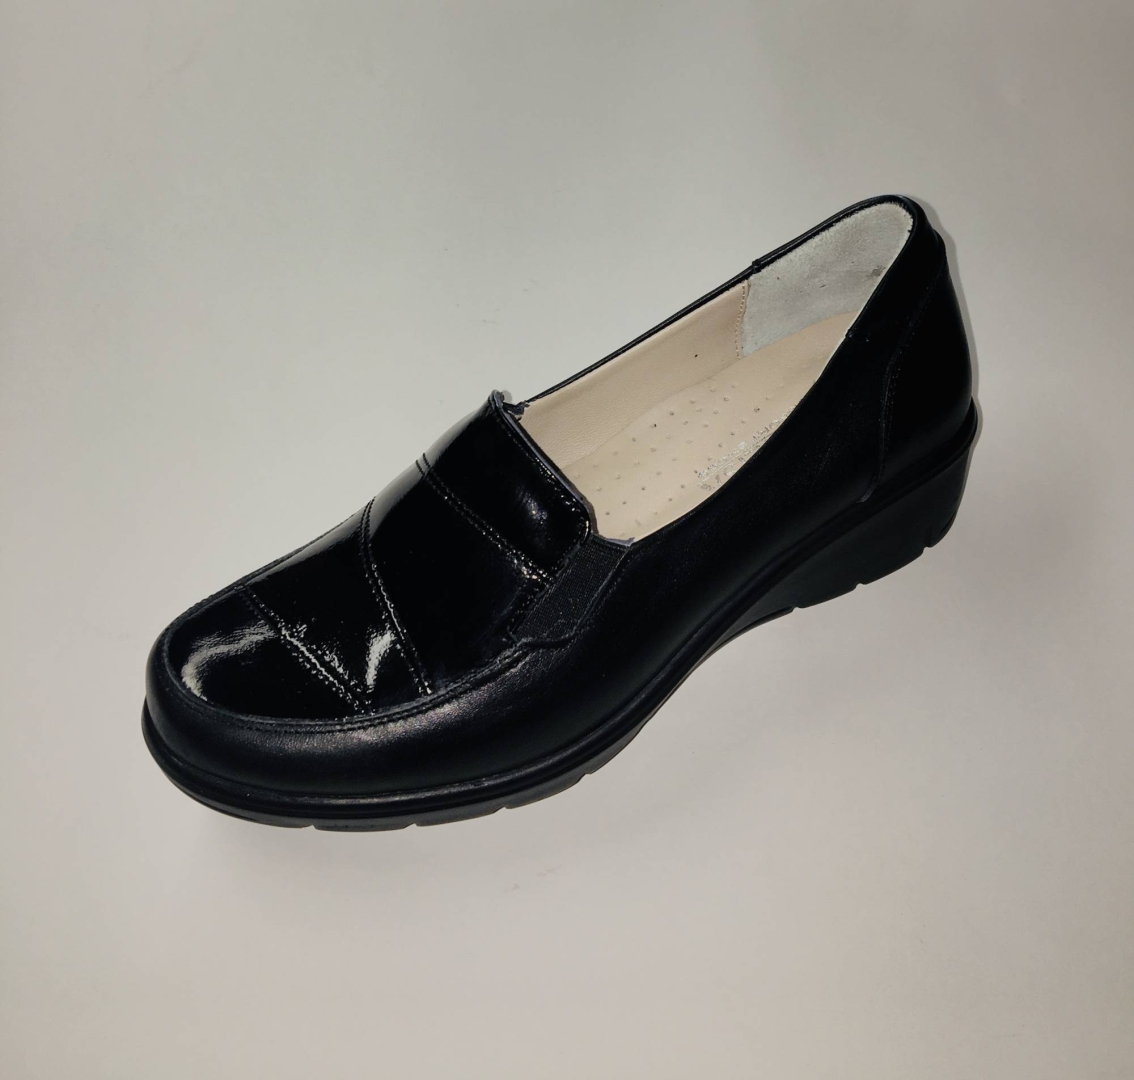 Zapato tipo mocasín para mujer en piel negro de MANLISA. M-135